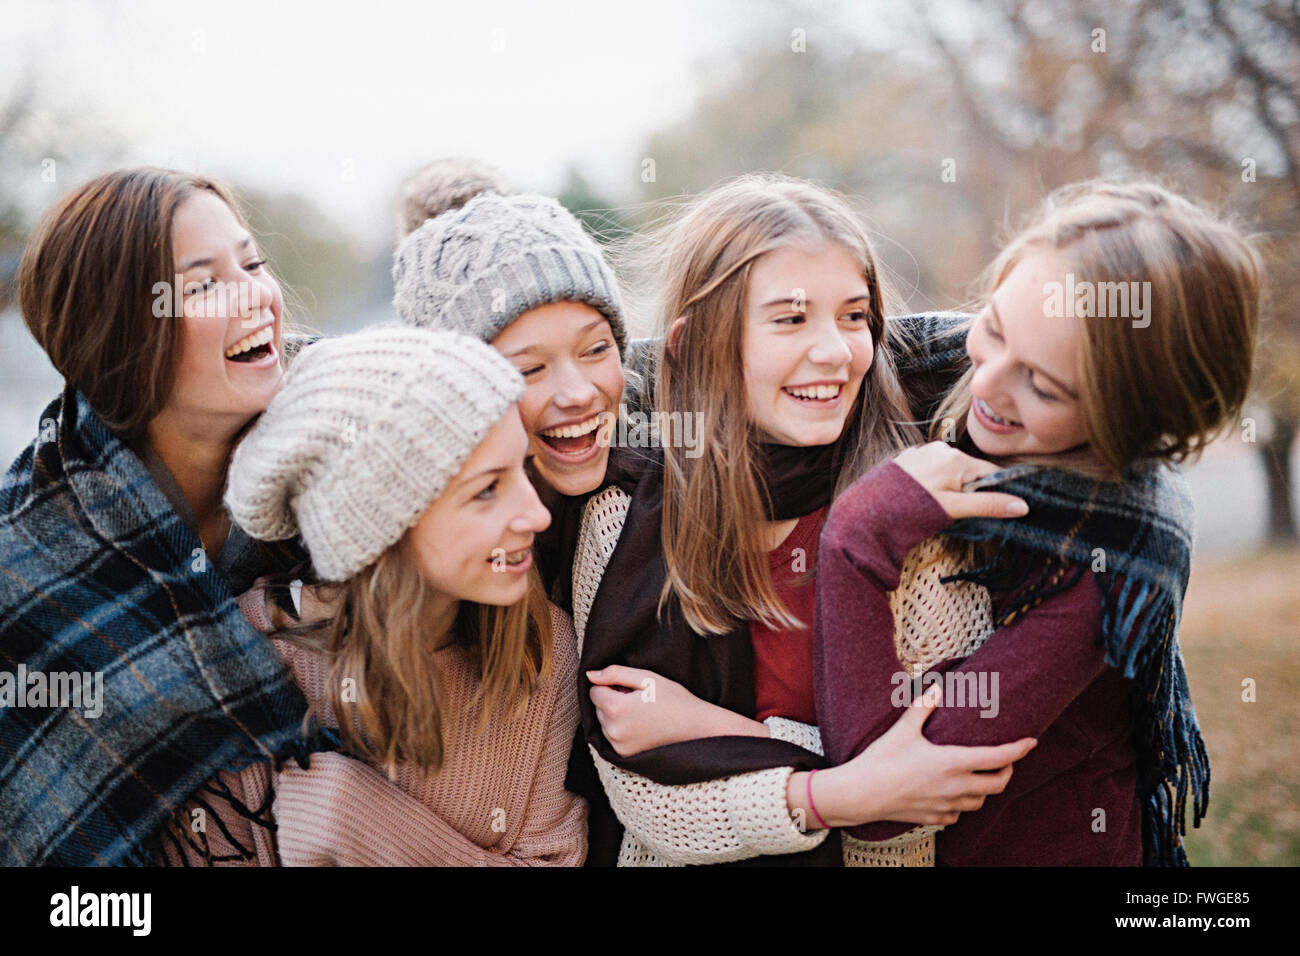 Cinco jóvenes, niñas, amigos en cálidos chales y sombreros lanudo afuera. Foto de stock